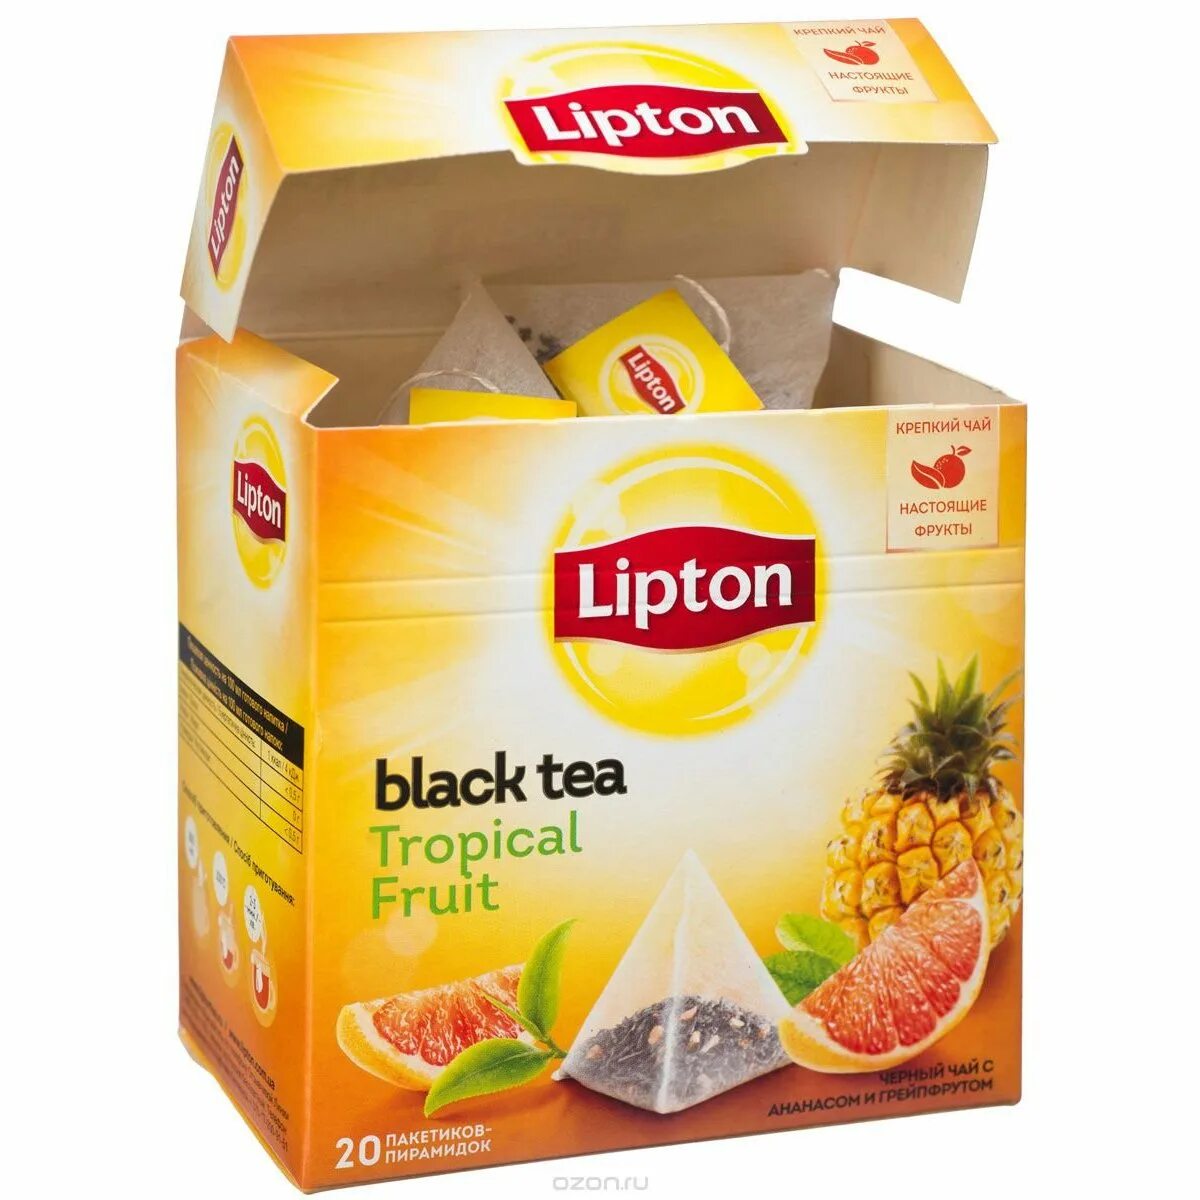 Липтон большой. Липтон черный чай Тропик. Липтон Тропикал Фрут. Чай Липтон тропические фрукты. Чай Липтон Тропикал Фрут.